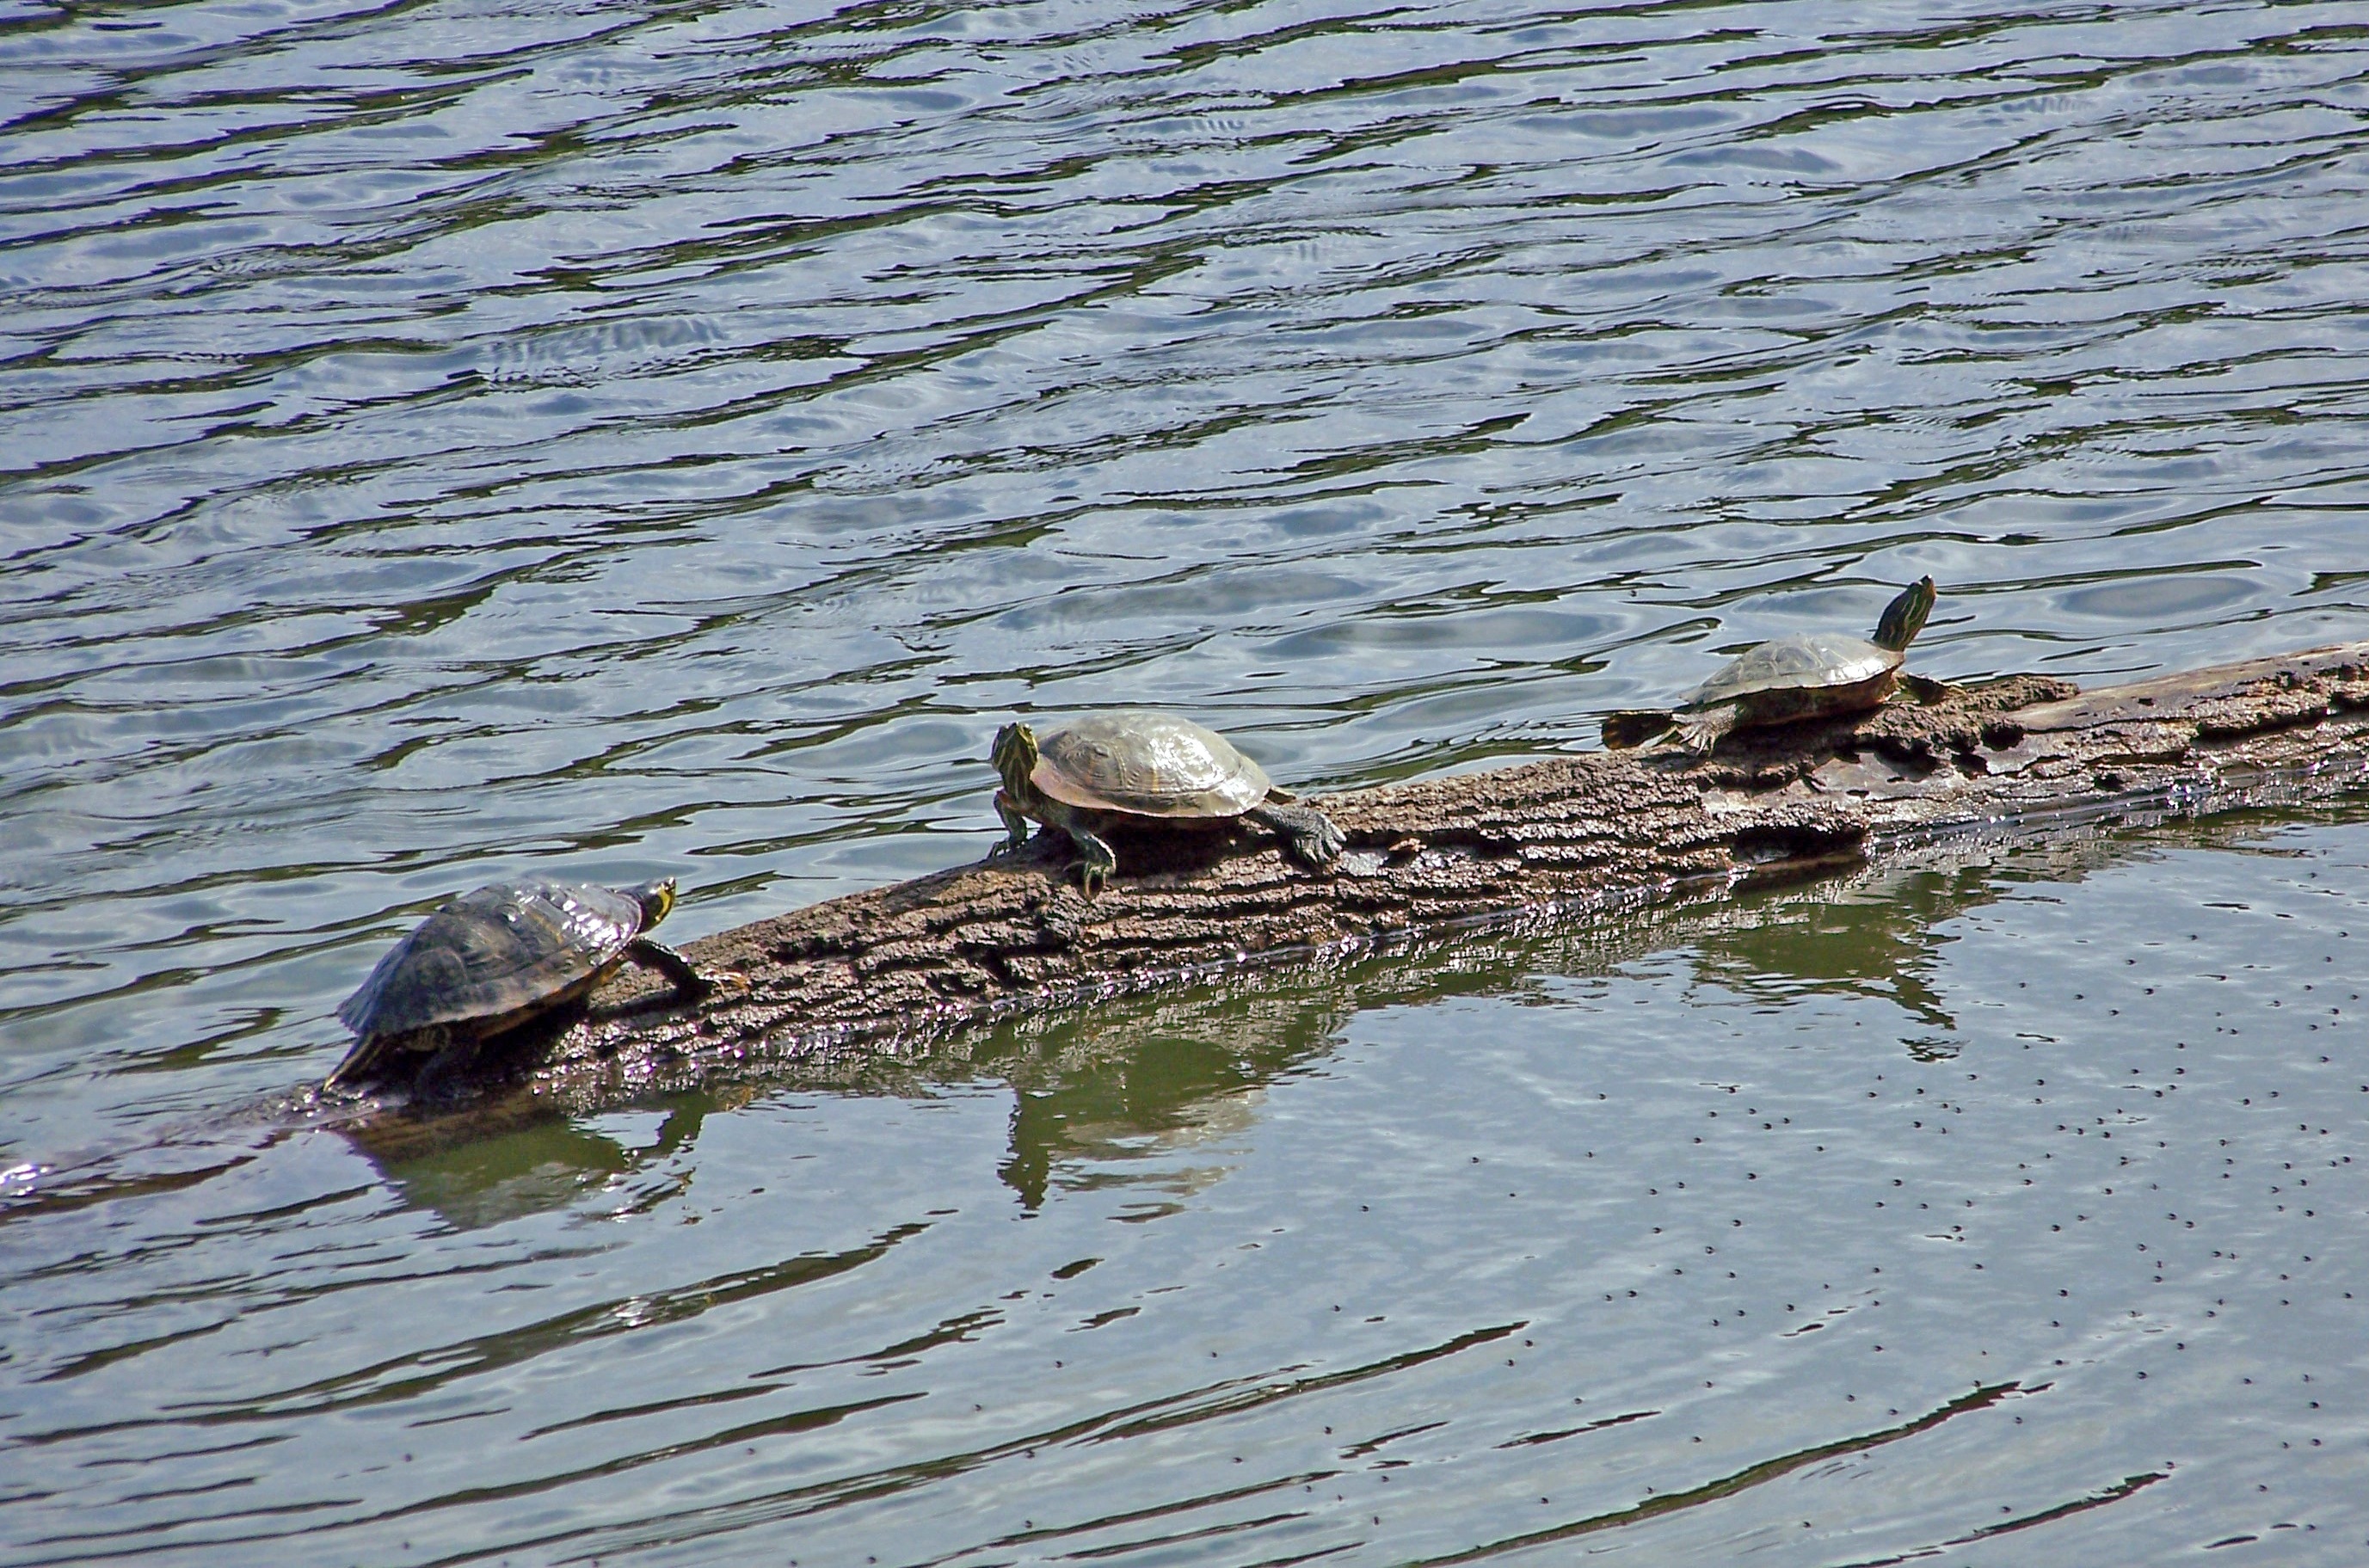 2 brown turtles